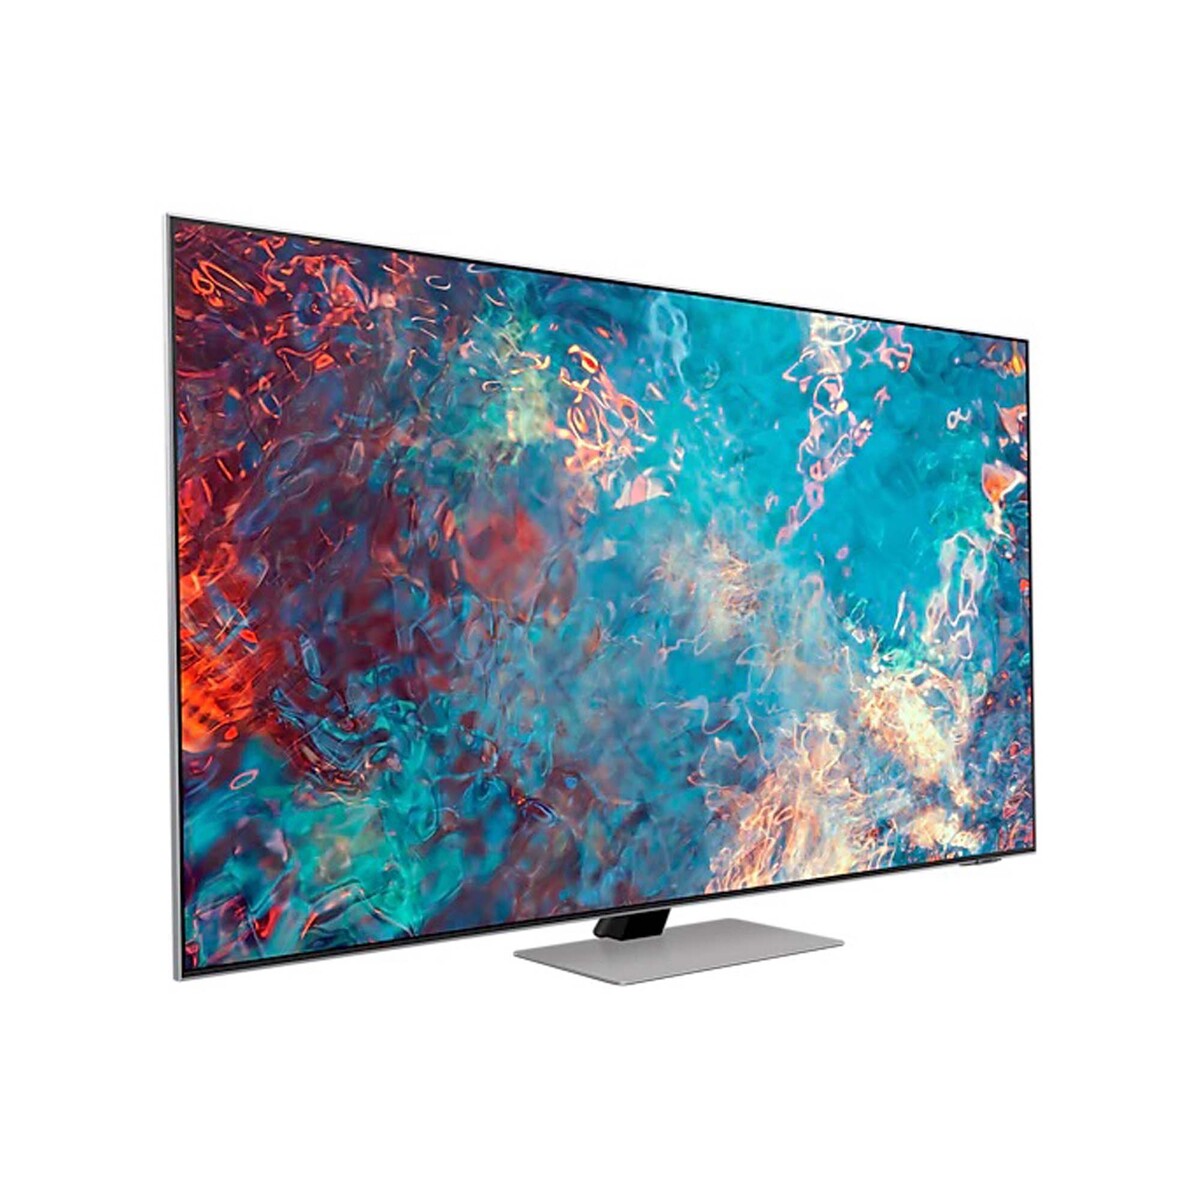 Samsung 65″ QN85A Neo QLED 4K Smart TV Online at Best Price | LED TV ...